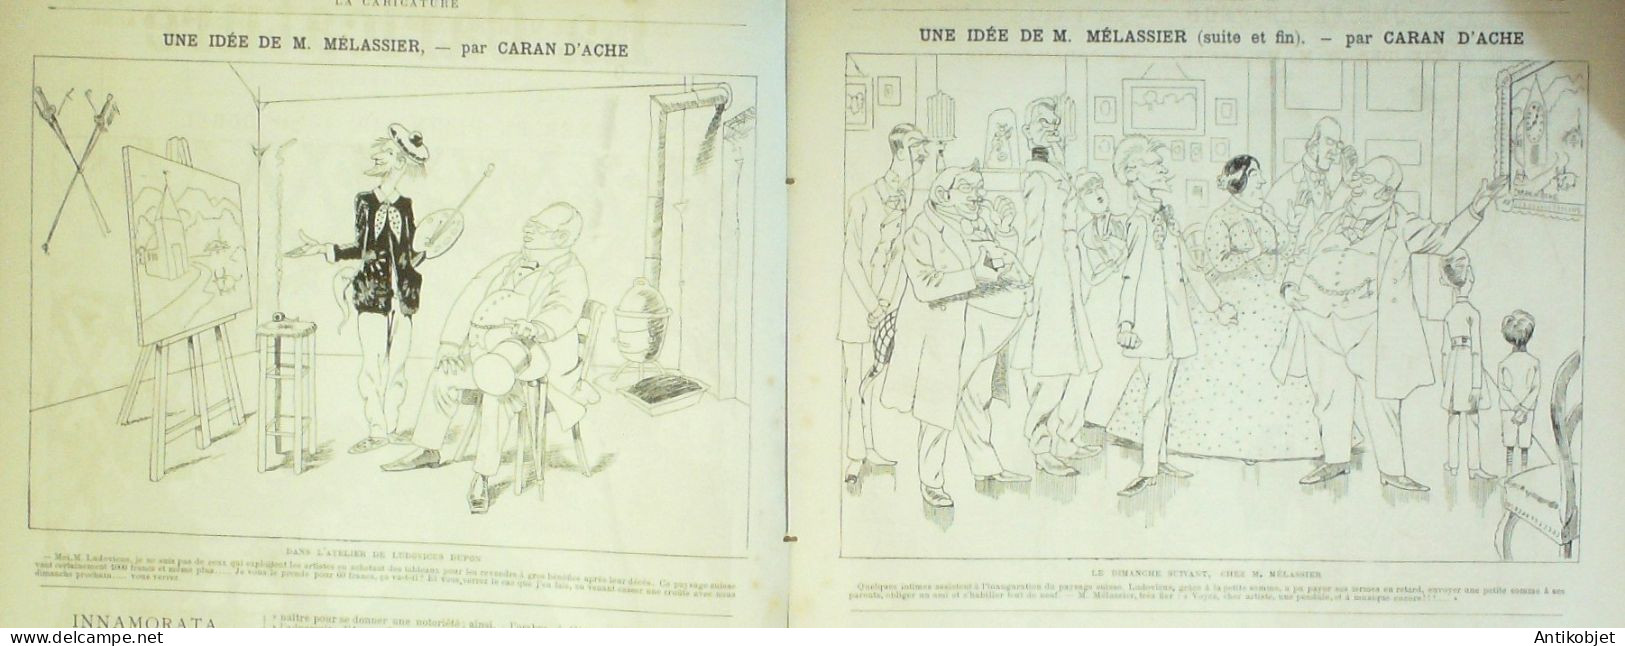 La Caricature 1886 N°339 Dîner Plein Air Sorel Mélassier Caran D'Ache Faria Gladstone Par Luque - Zeitschriften - Vor 1900